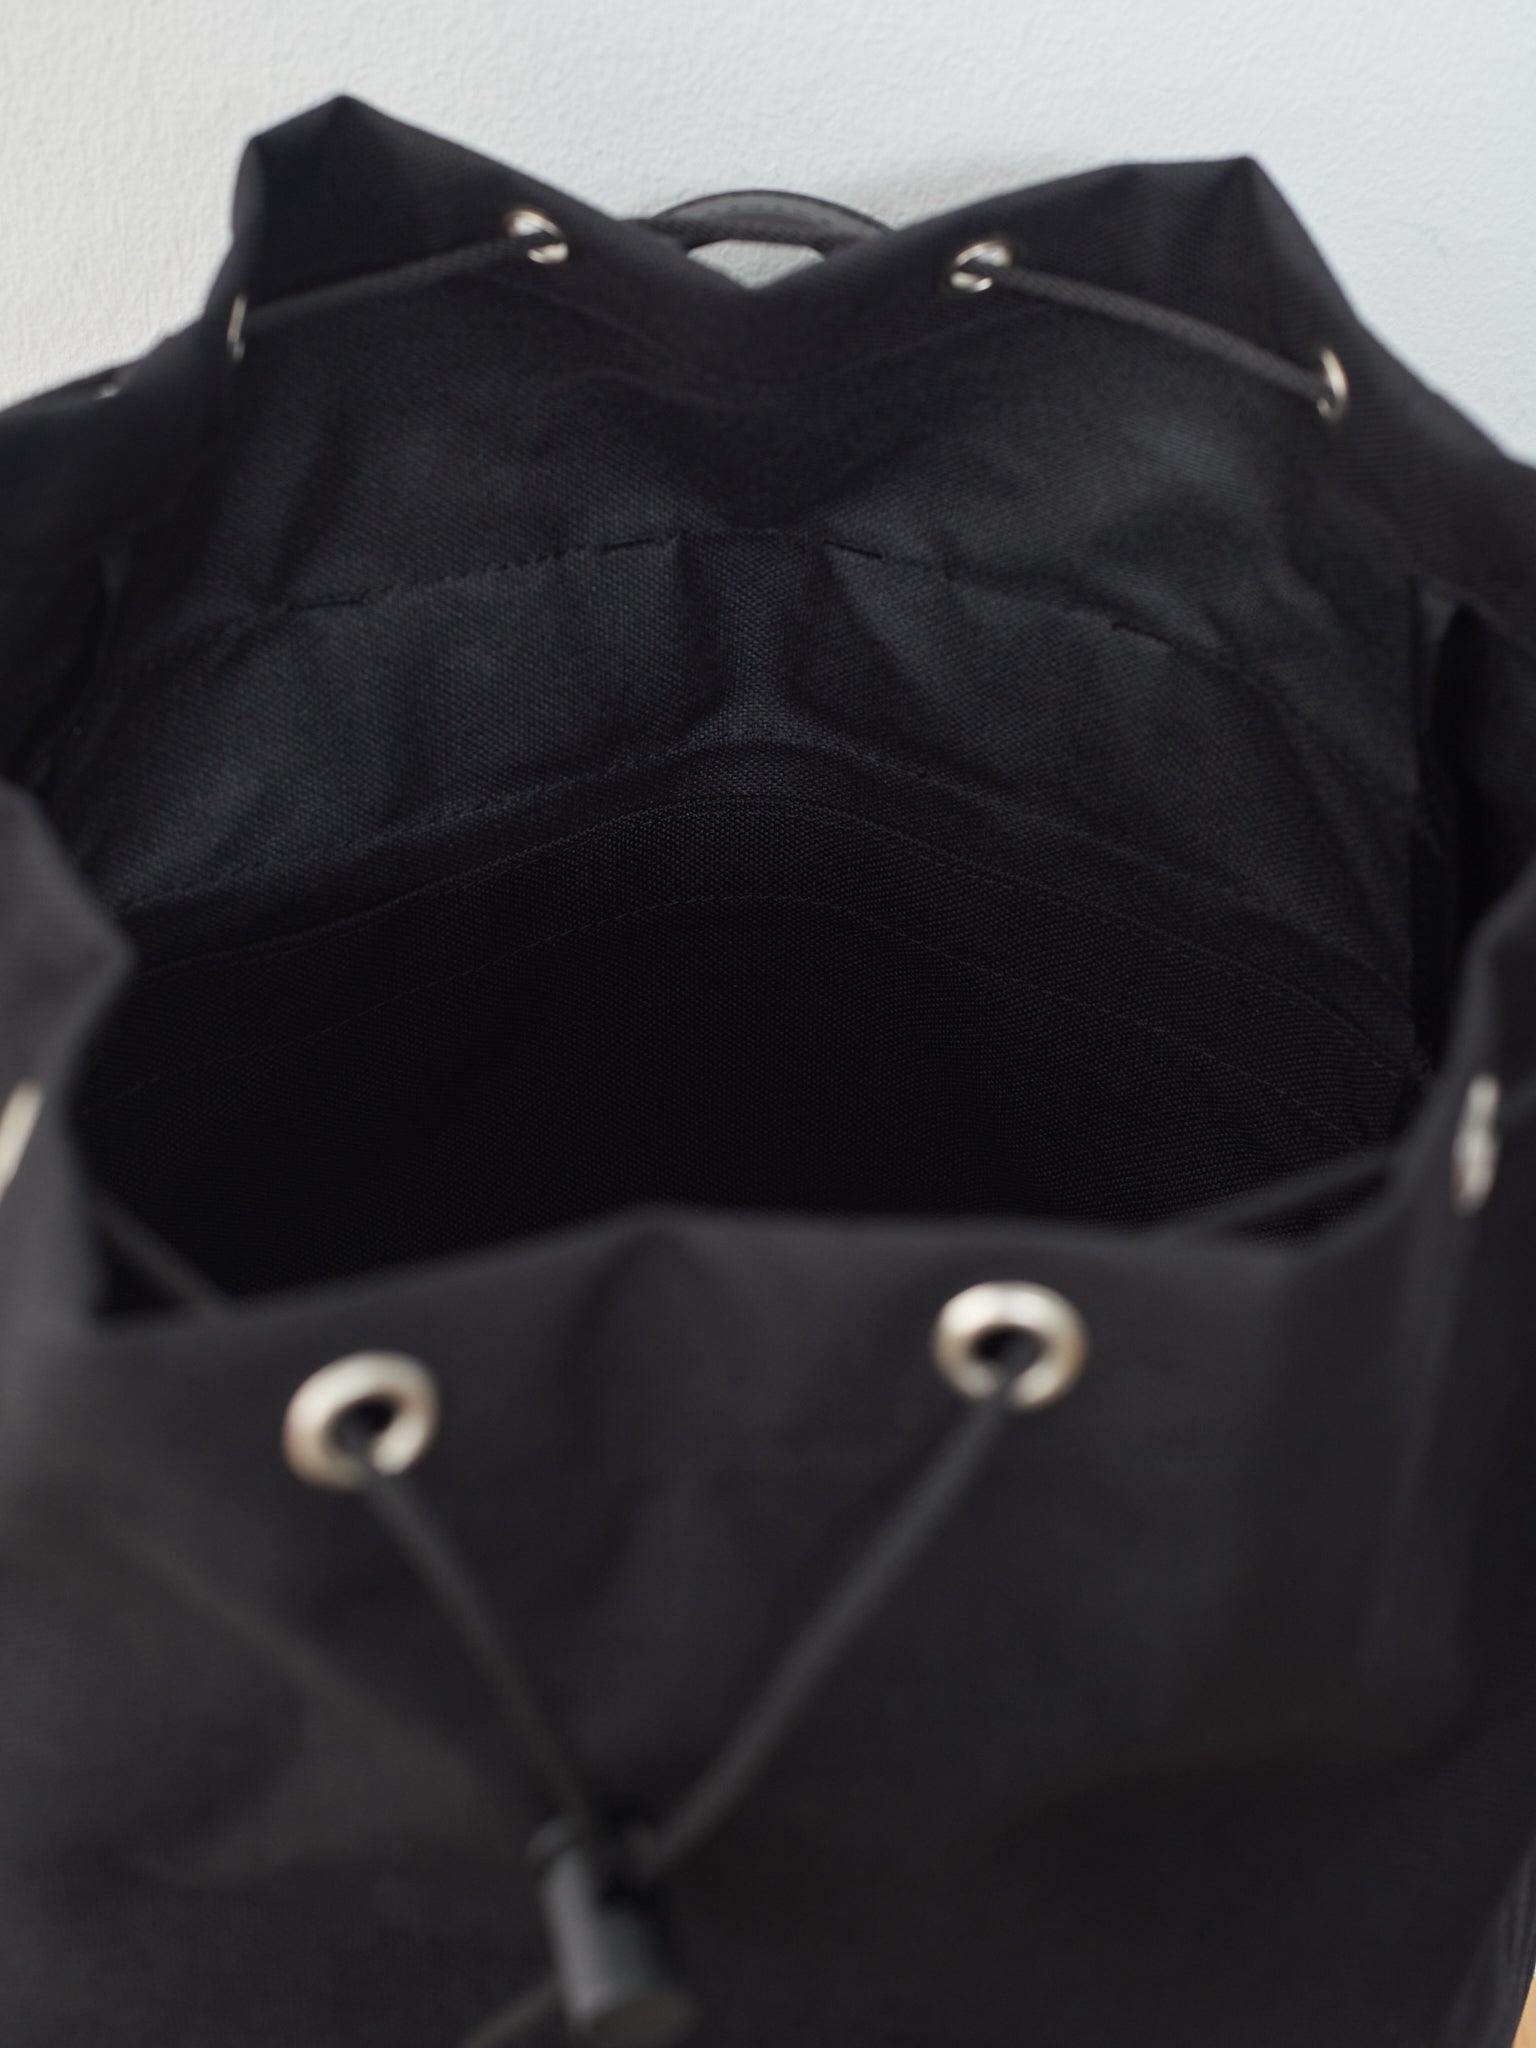 Namu Shop - Aeta Backpack DC M - Black